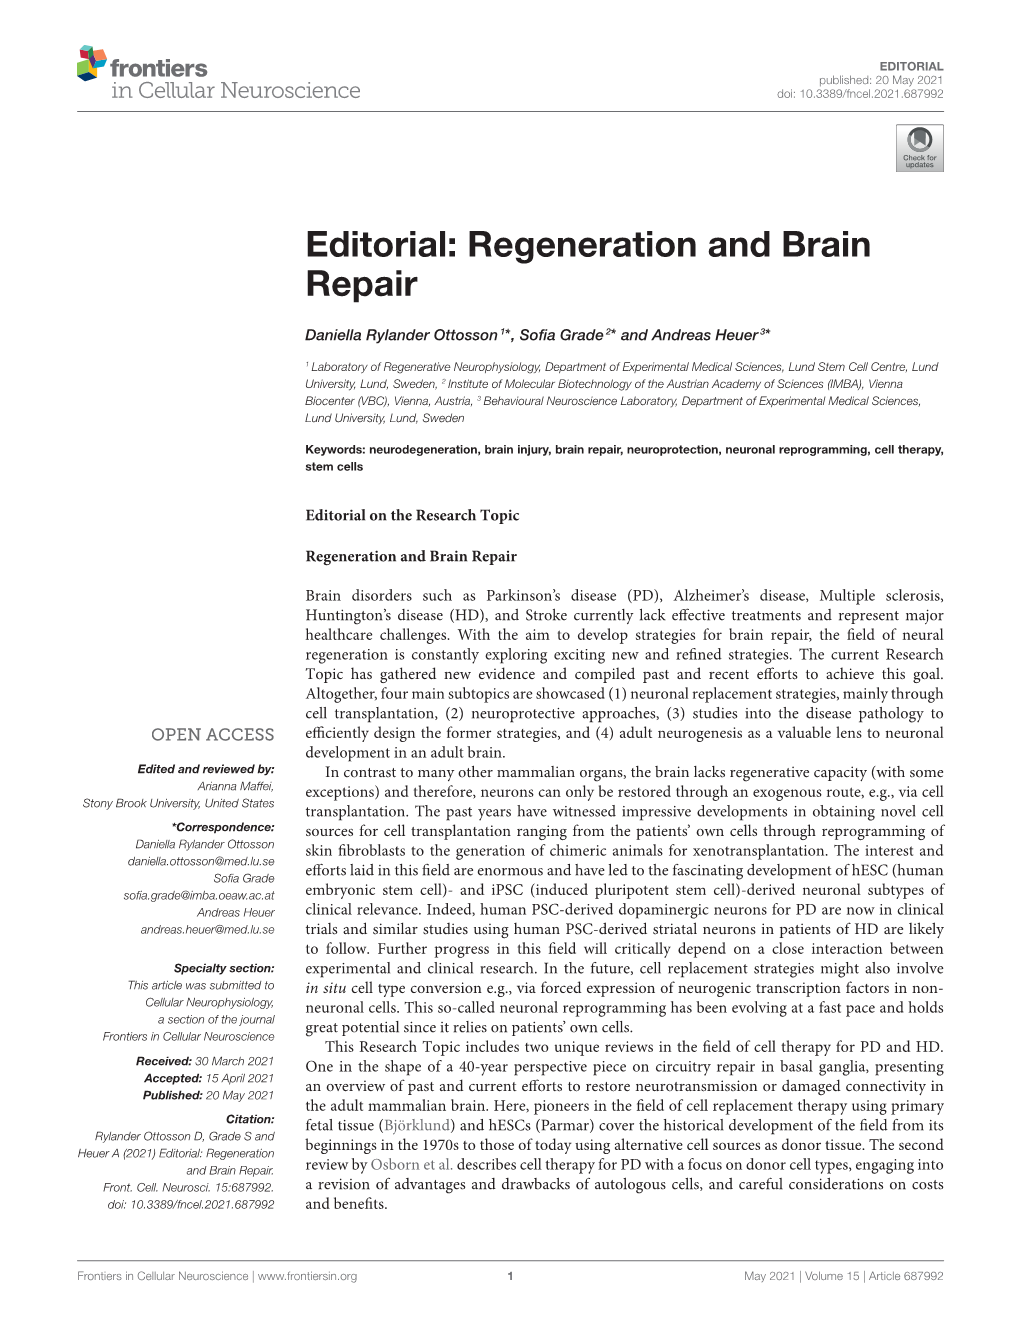 Regeneration and Brain Repair